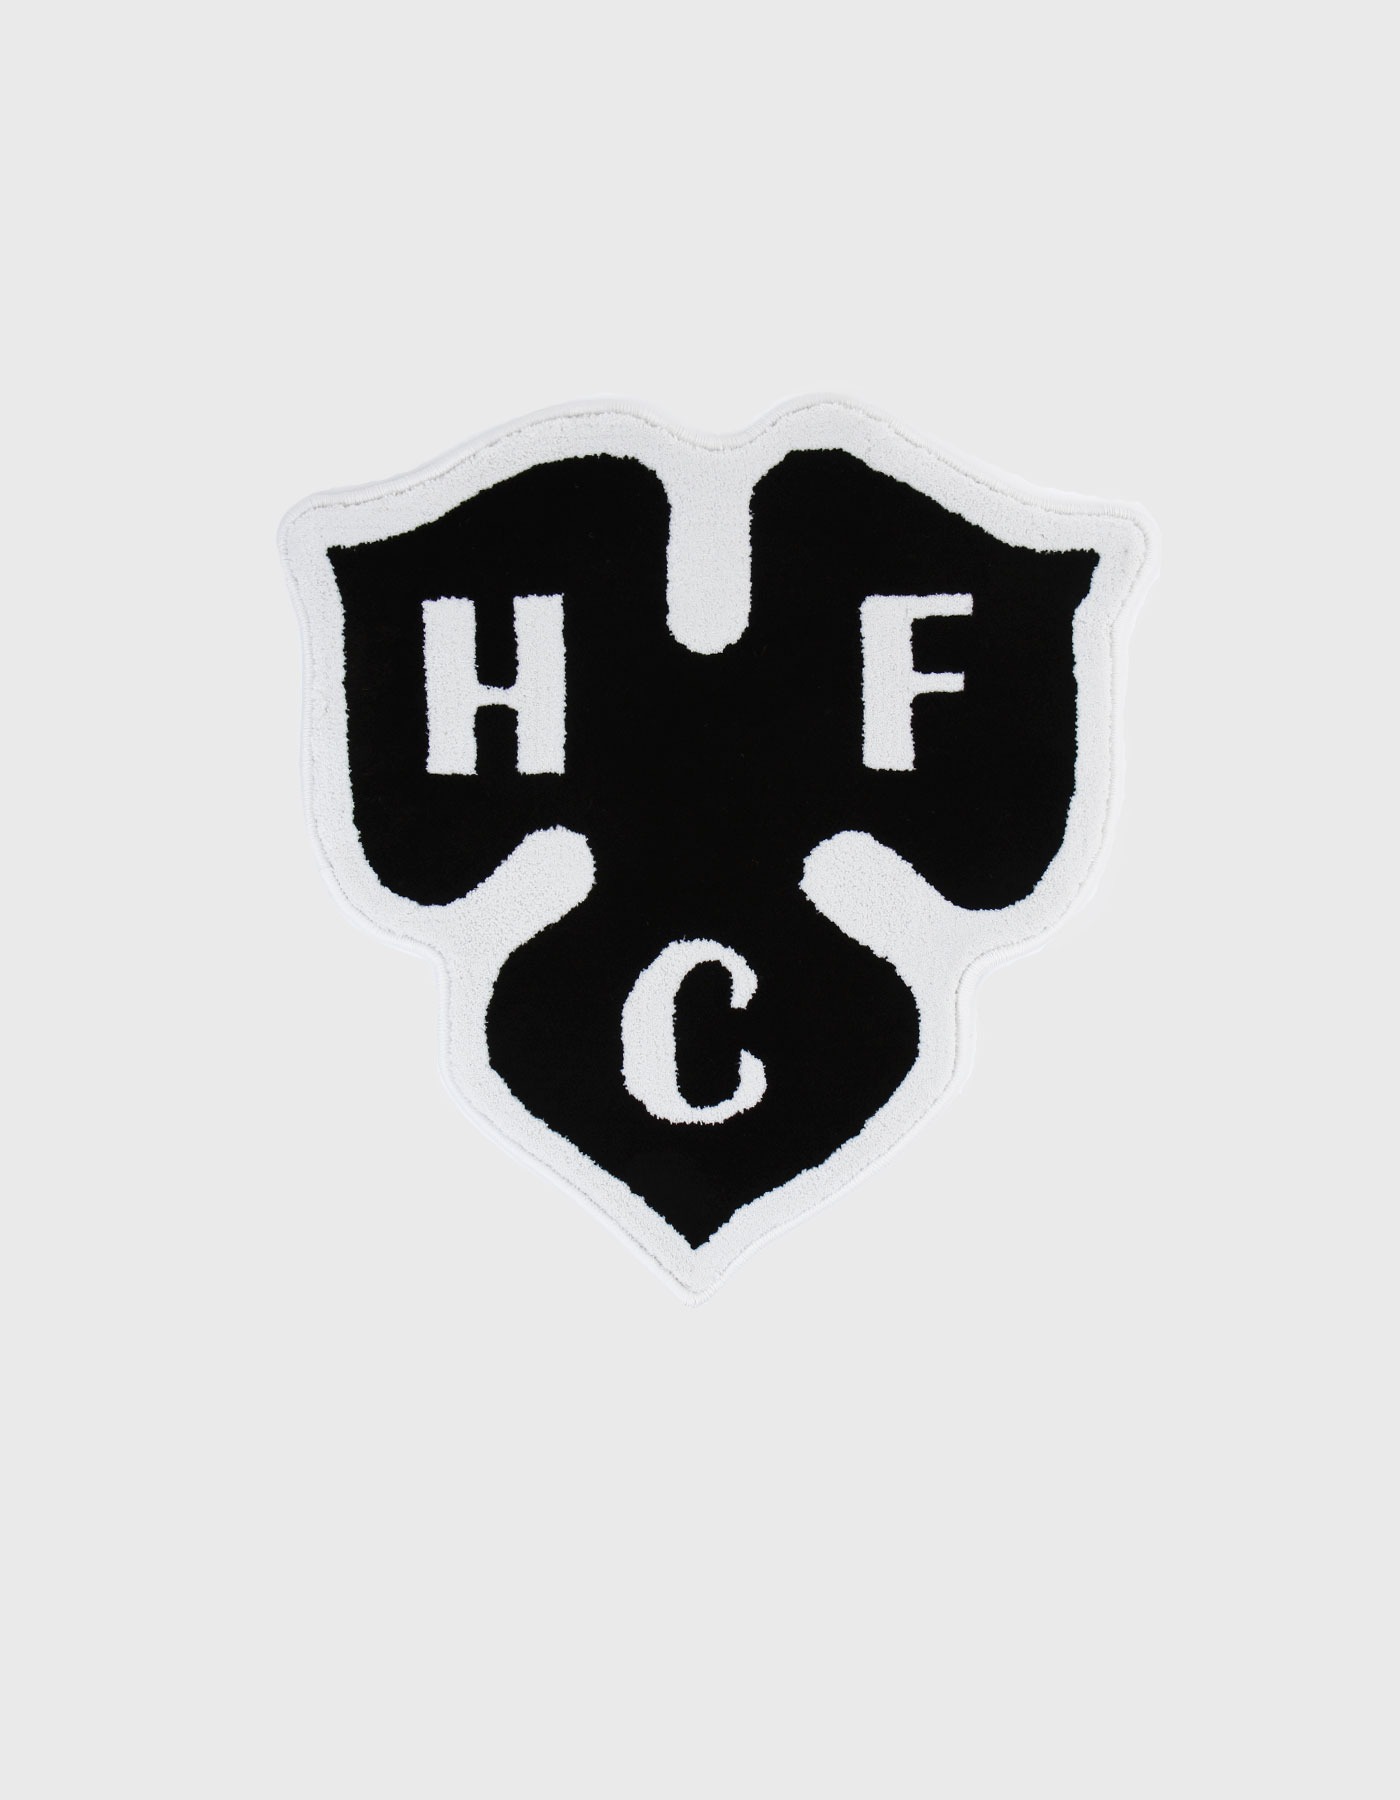 HFC CLOVER RUG / Black-White